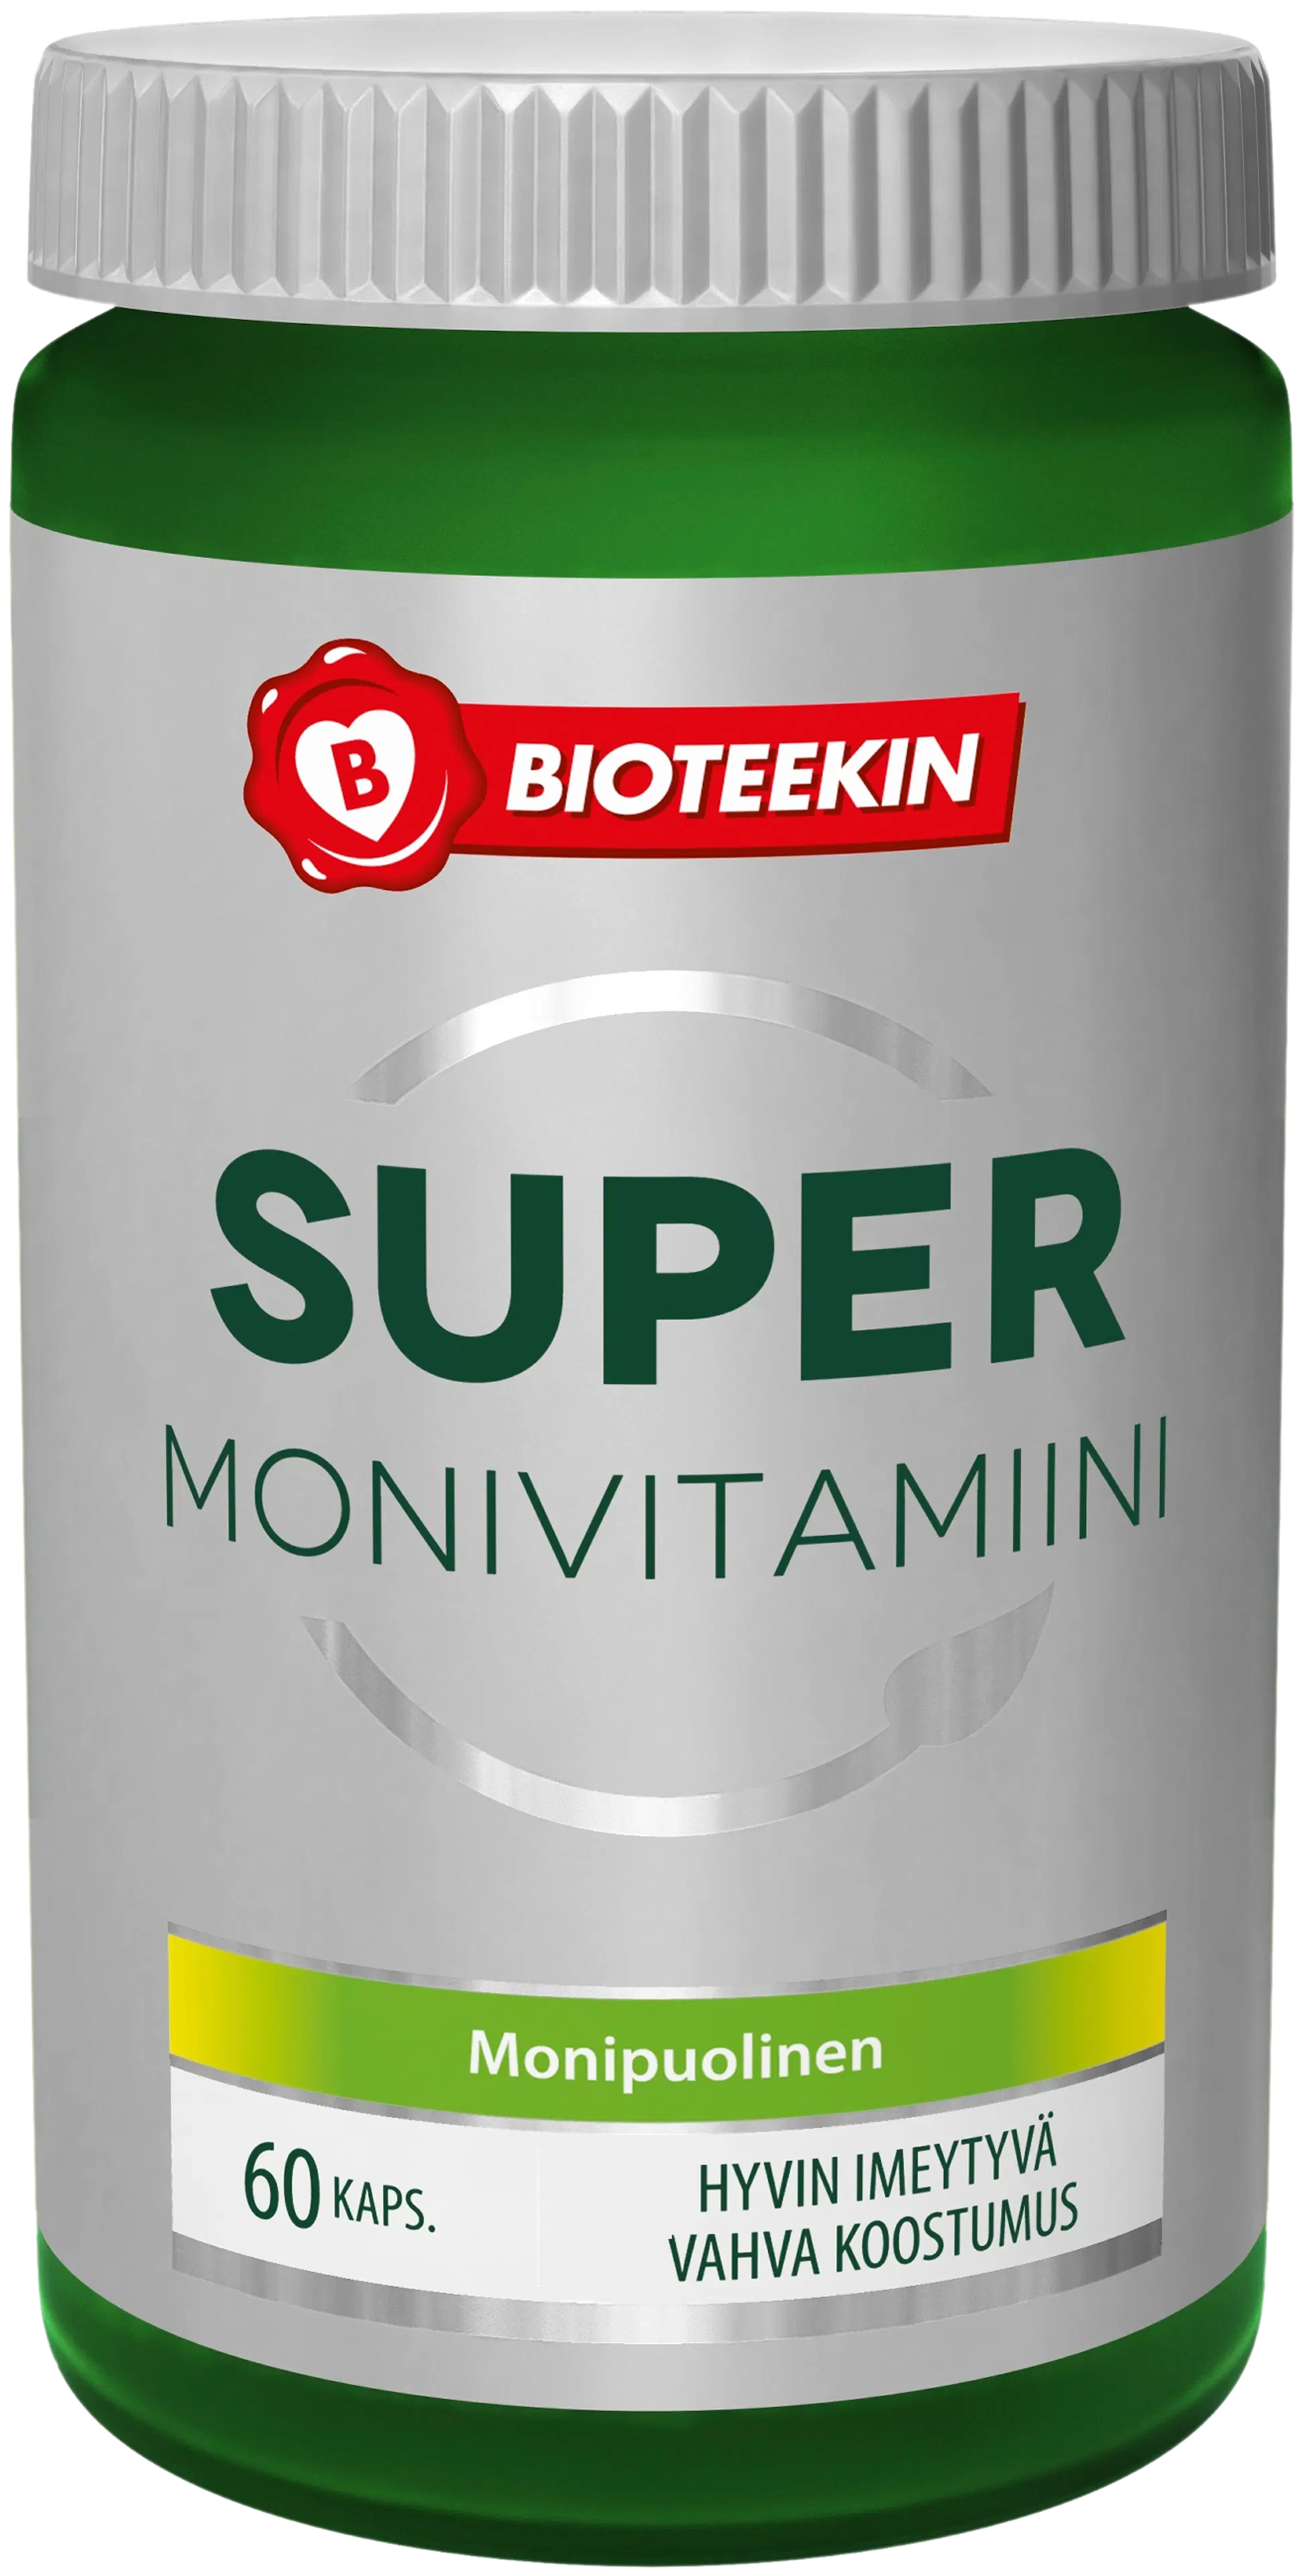 Bioteekki Super Monivitamiini ravintolisä 60 kaps.